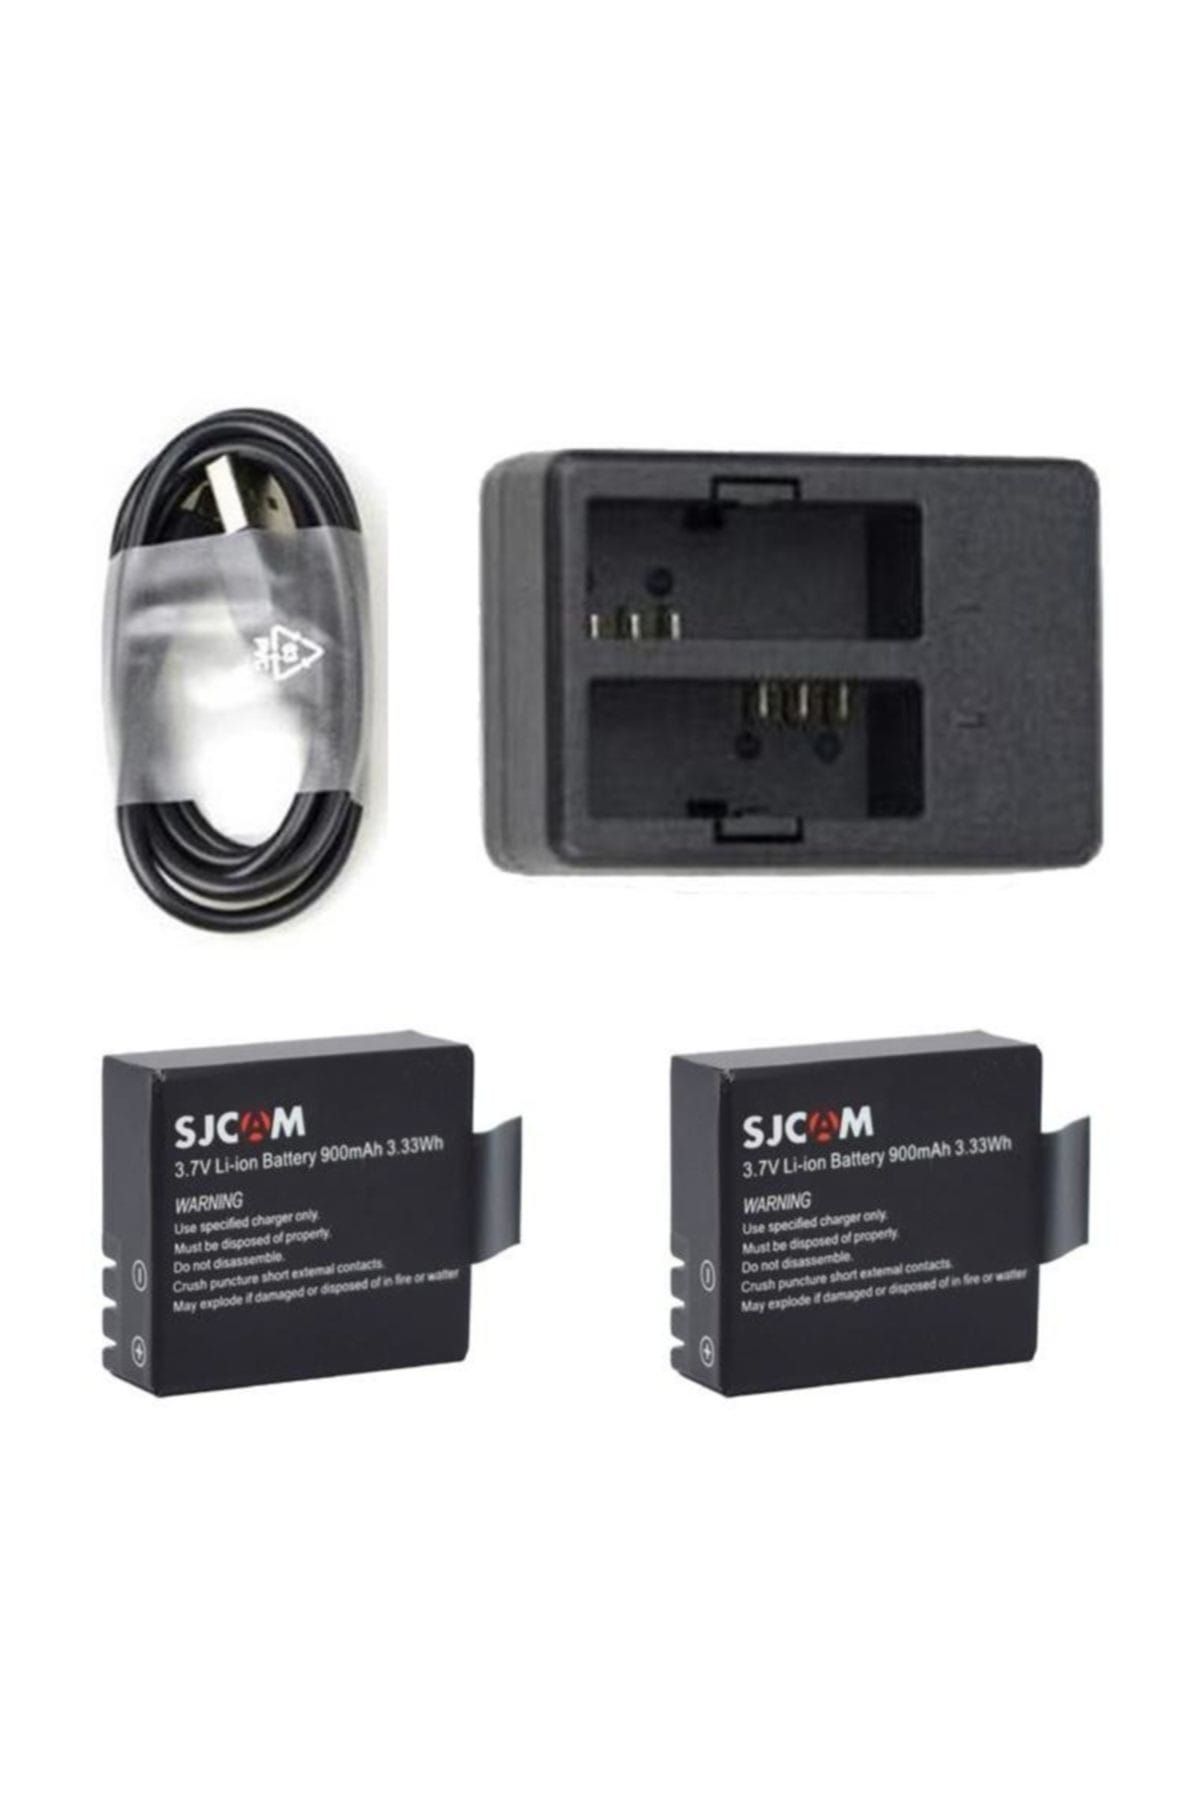 Gplus Orjinal SJCAM 2 Adet Yedek Batarya ve Çiftli USB Şarj İstasyonu